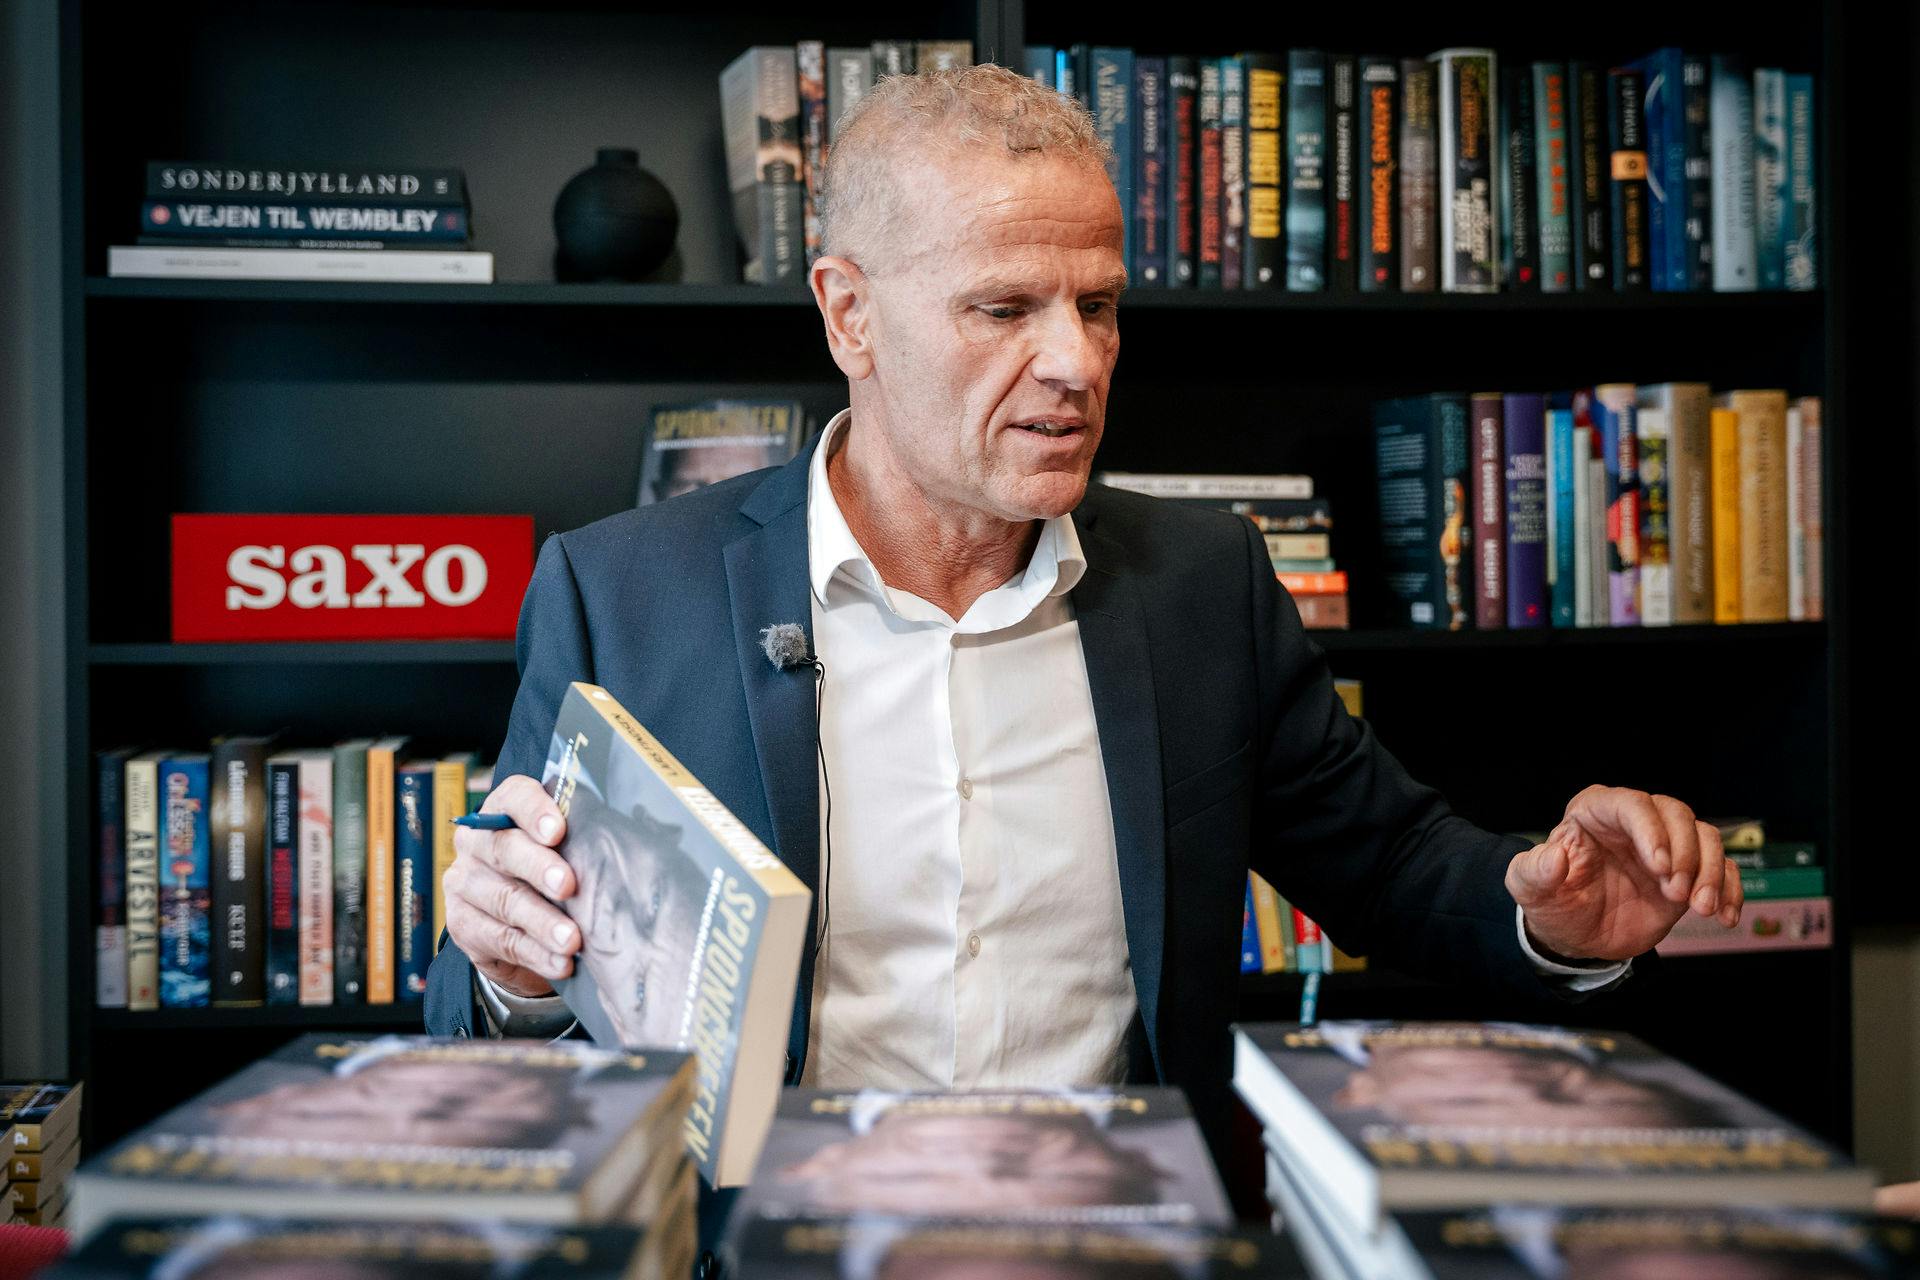 Lars Findsens bog sælges i tusindvis af eksemplarer. Første forlag er for længst revet væk. Nu skal der trykkes flere.